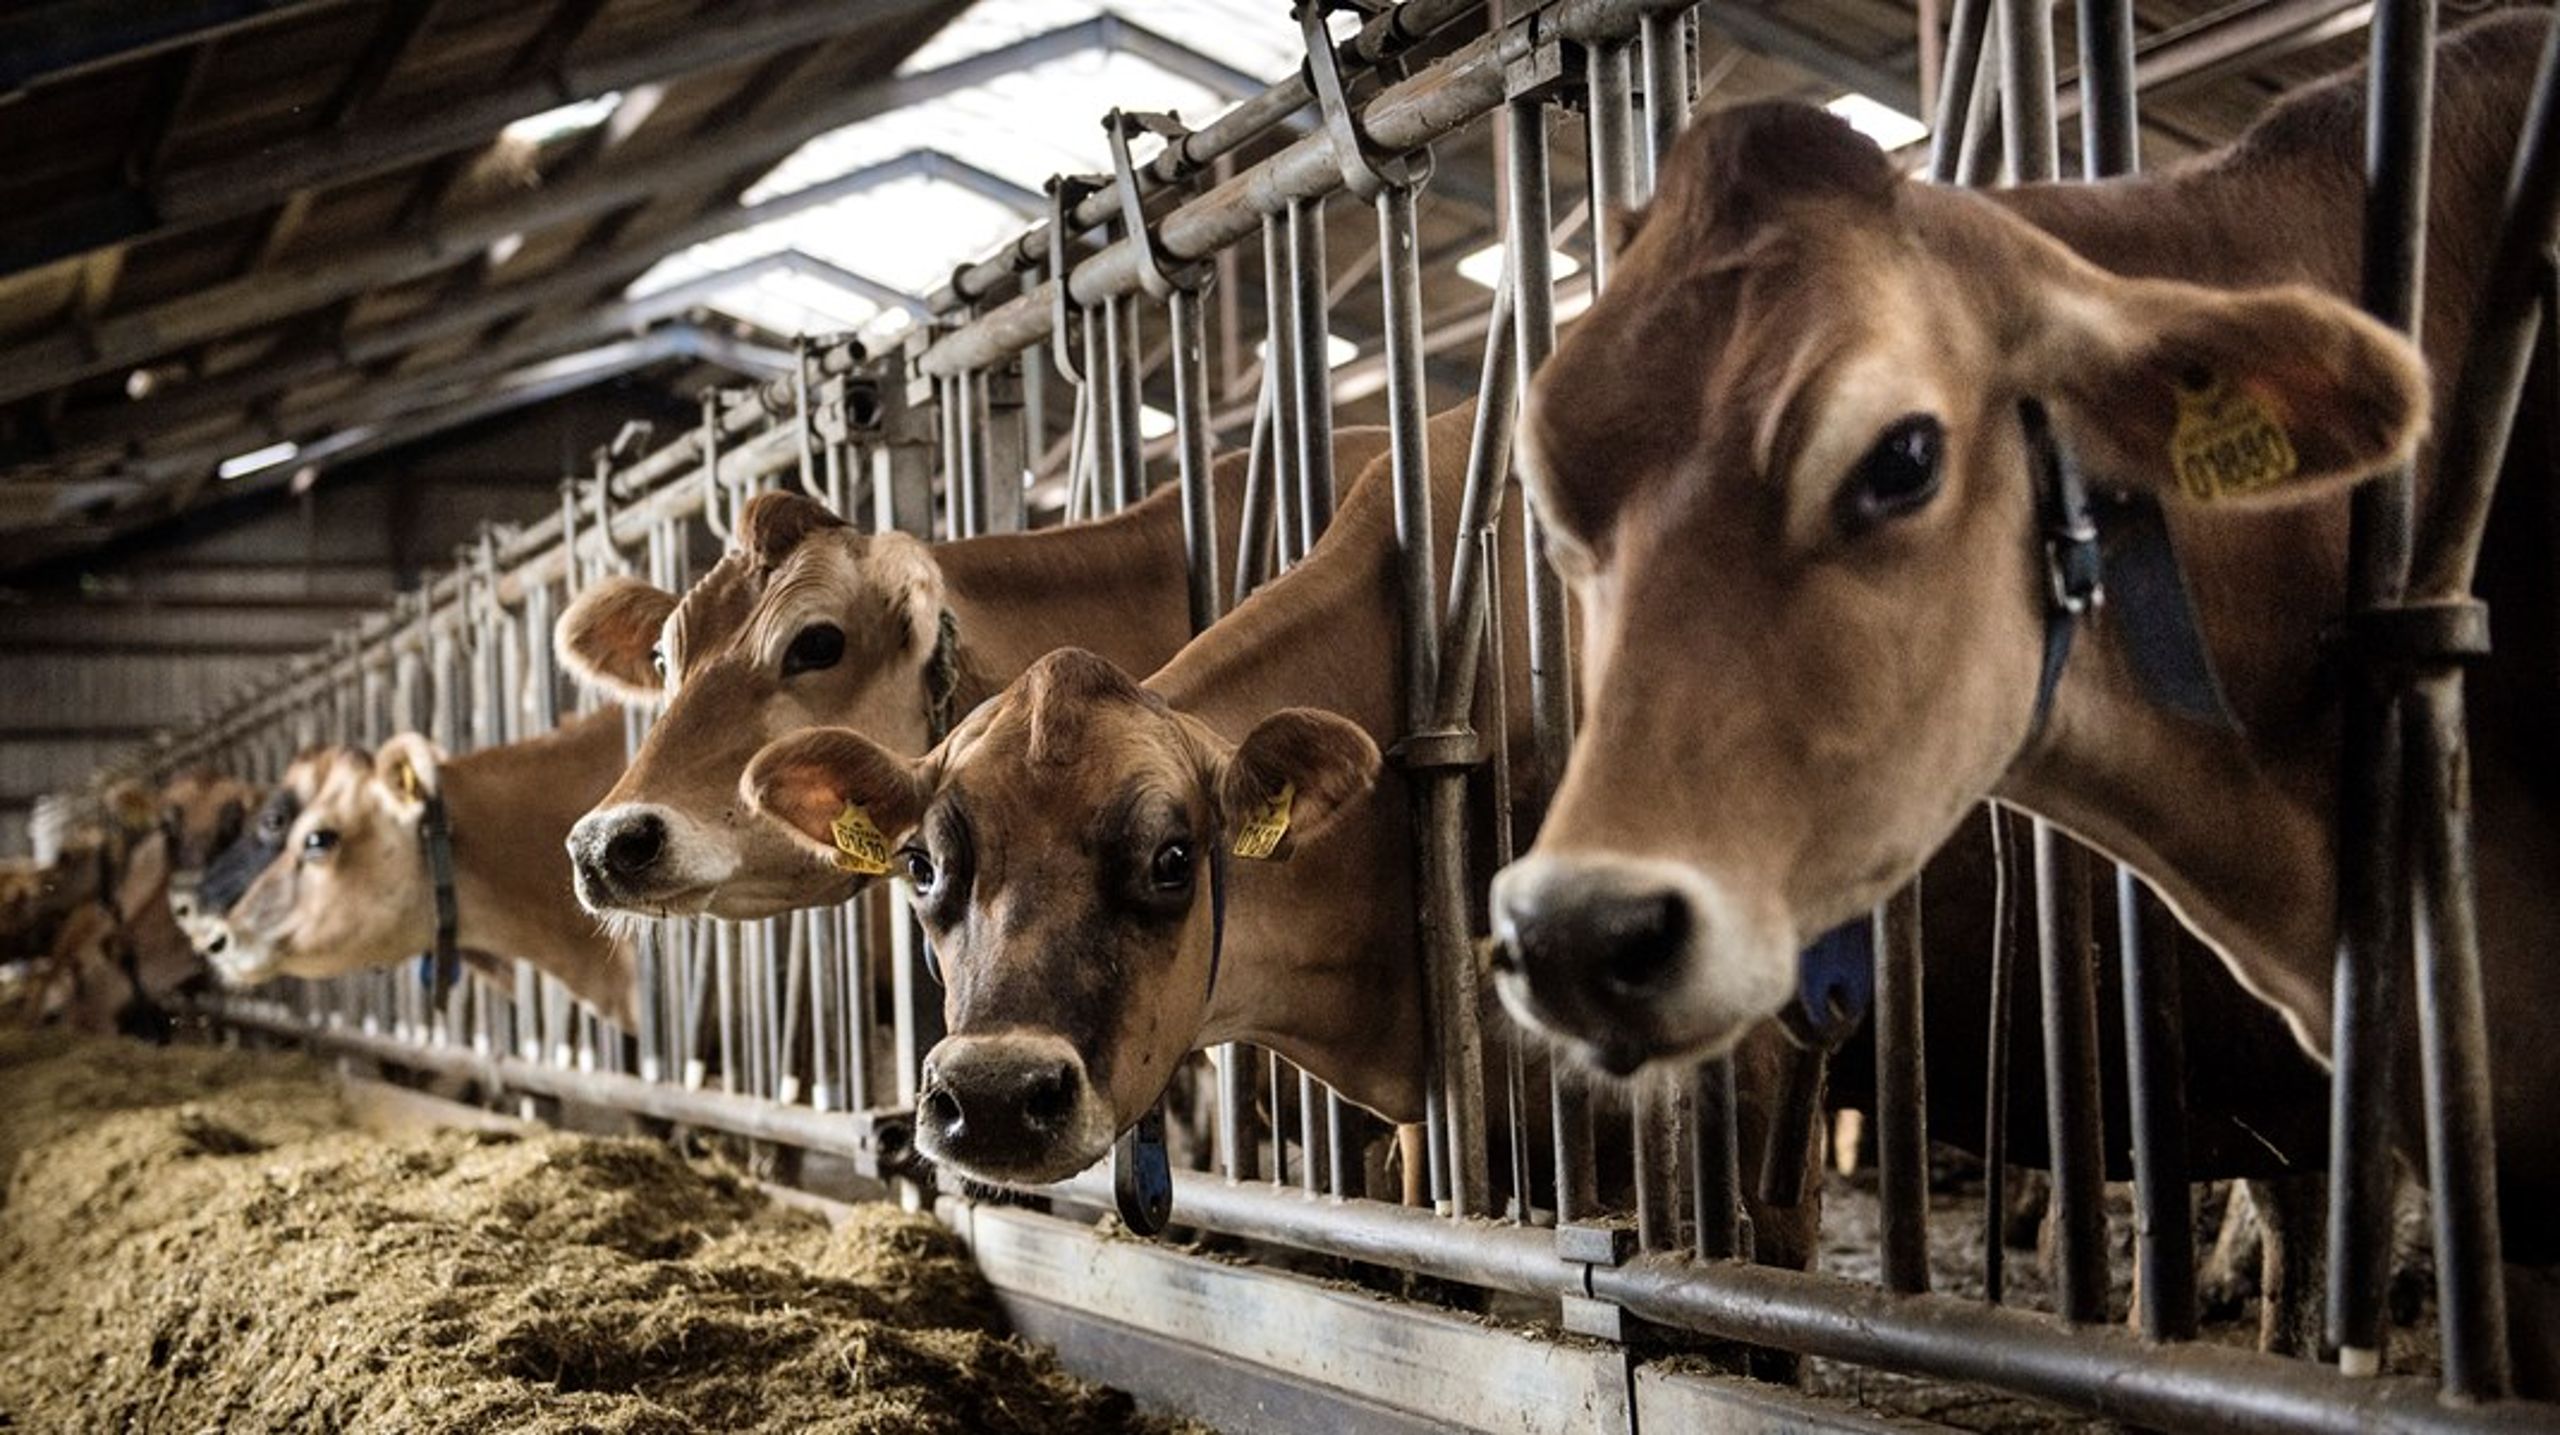 Foderstoffet Bovaer passer til et system, hvor vi dyrker foder til køer, der bliver opdrættet i stalde. Men det er ikke i overensstemmelse med et bæredygtigt dyrehold, skriver otte grønne organisationer.